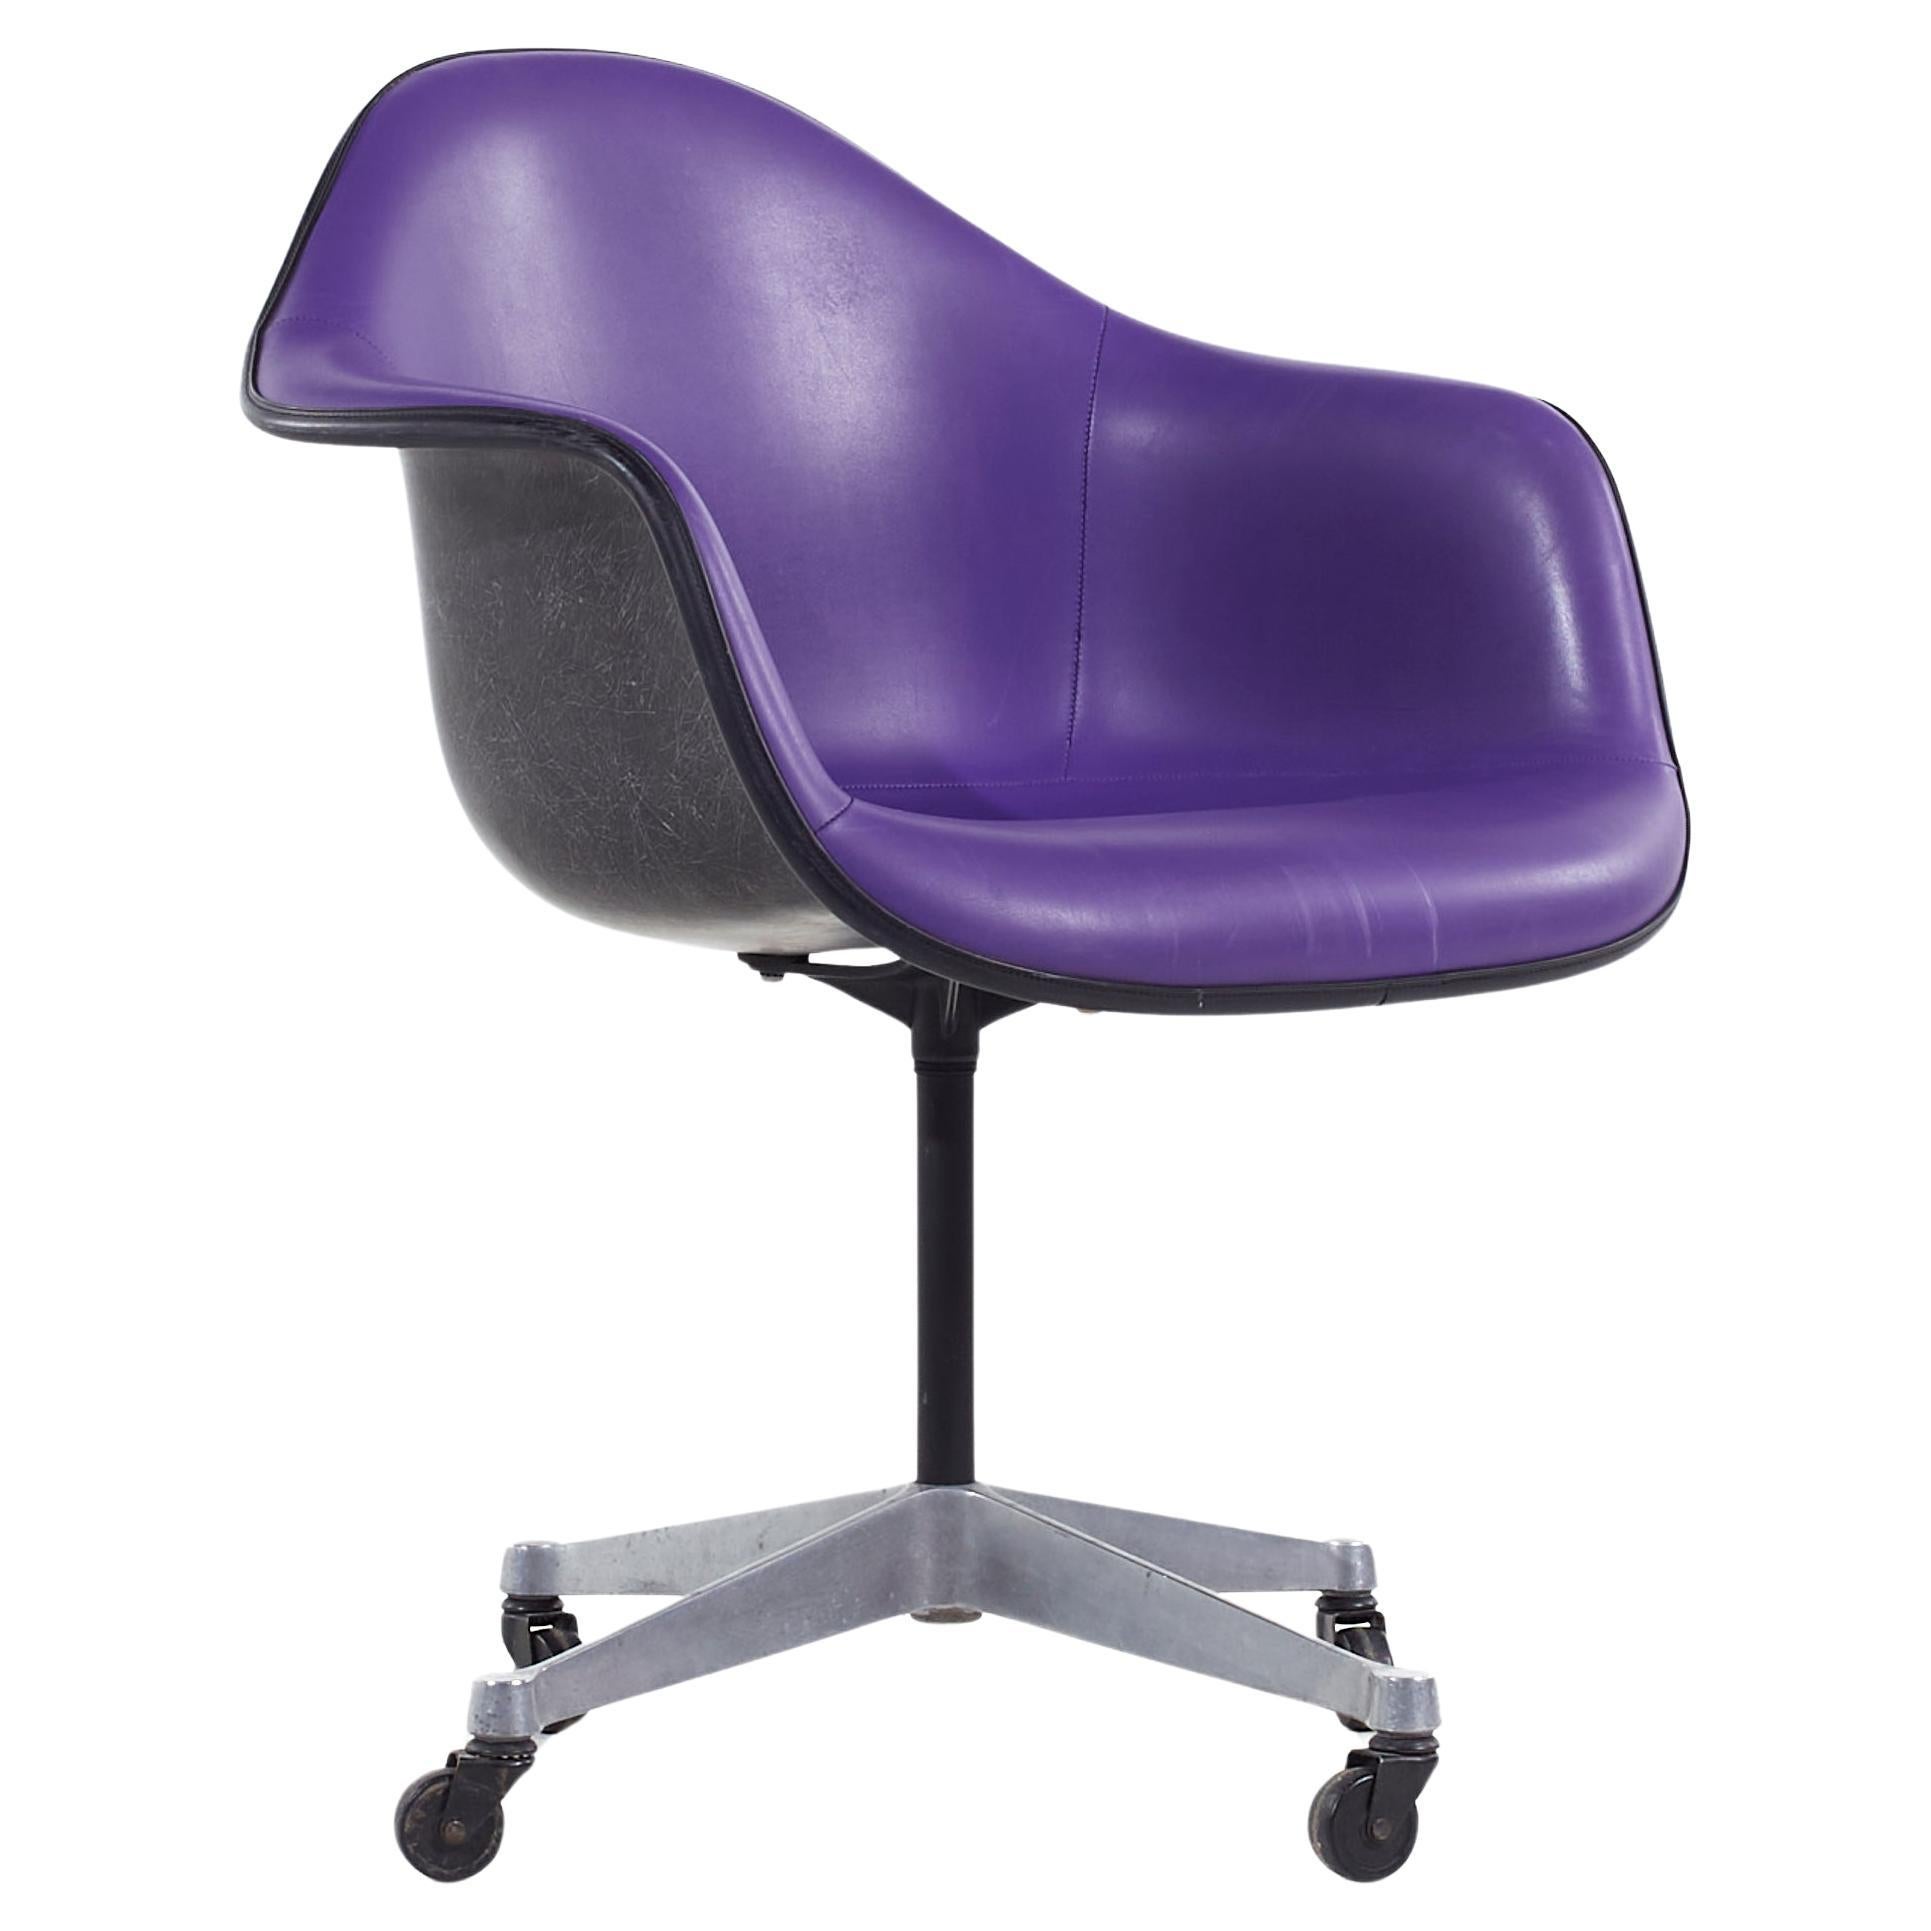 Eames for Herman Miller MCM Purple Padded Fiberglass Swivel Office Chair